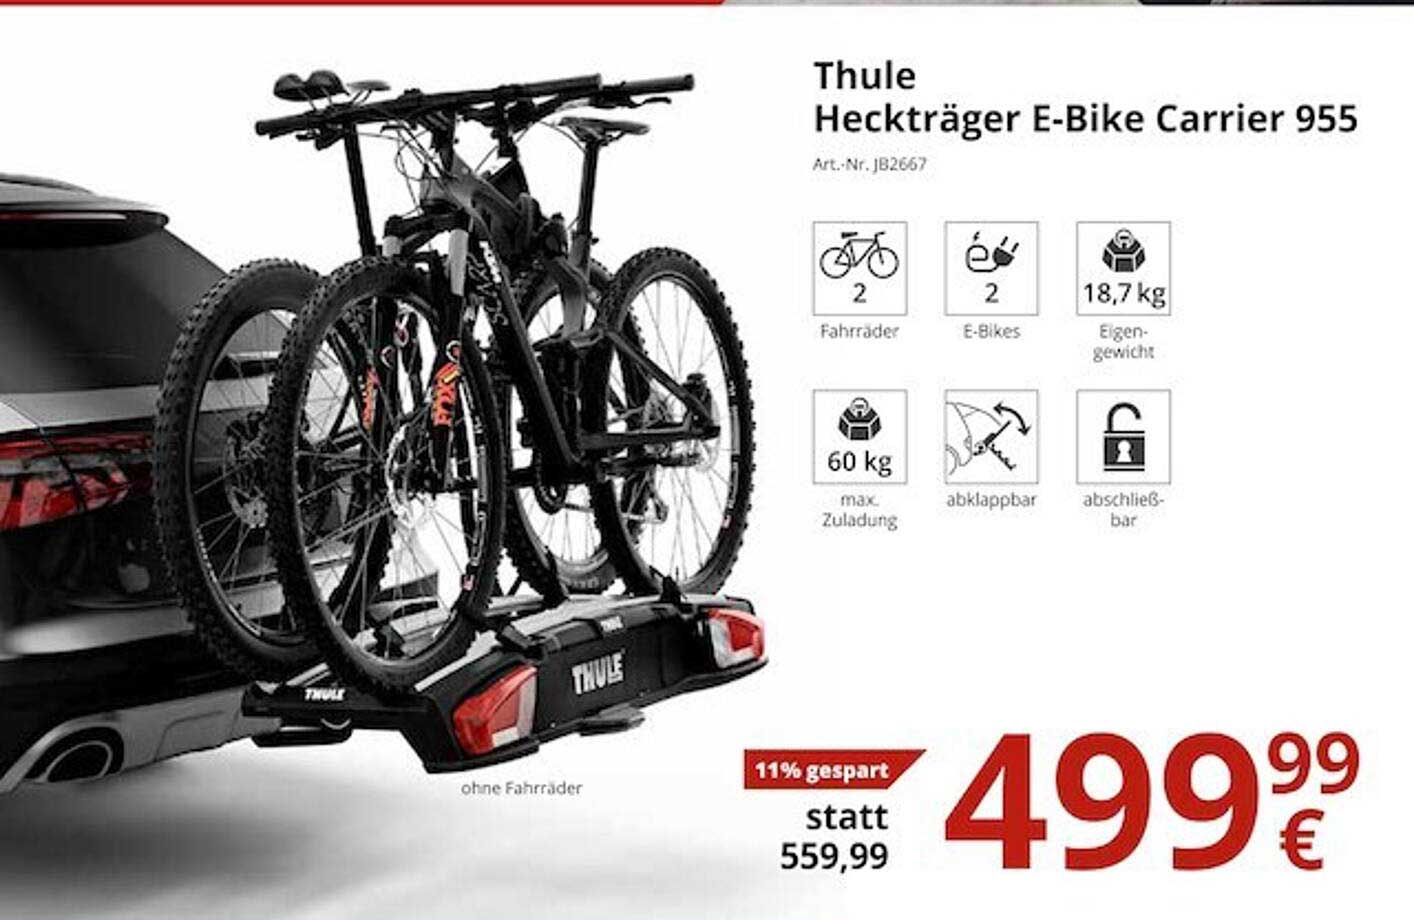 ATU Thule Heckträger E-bike Carrier 955